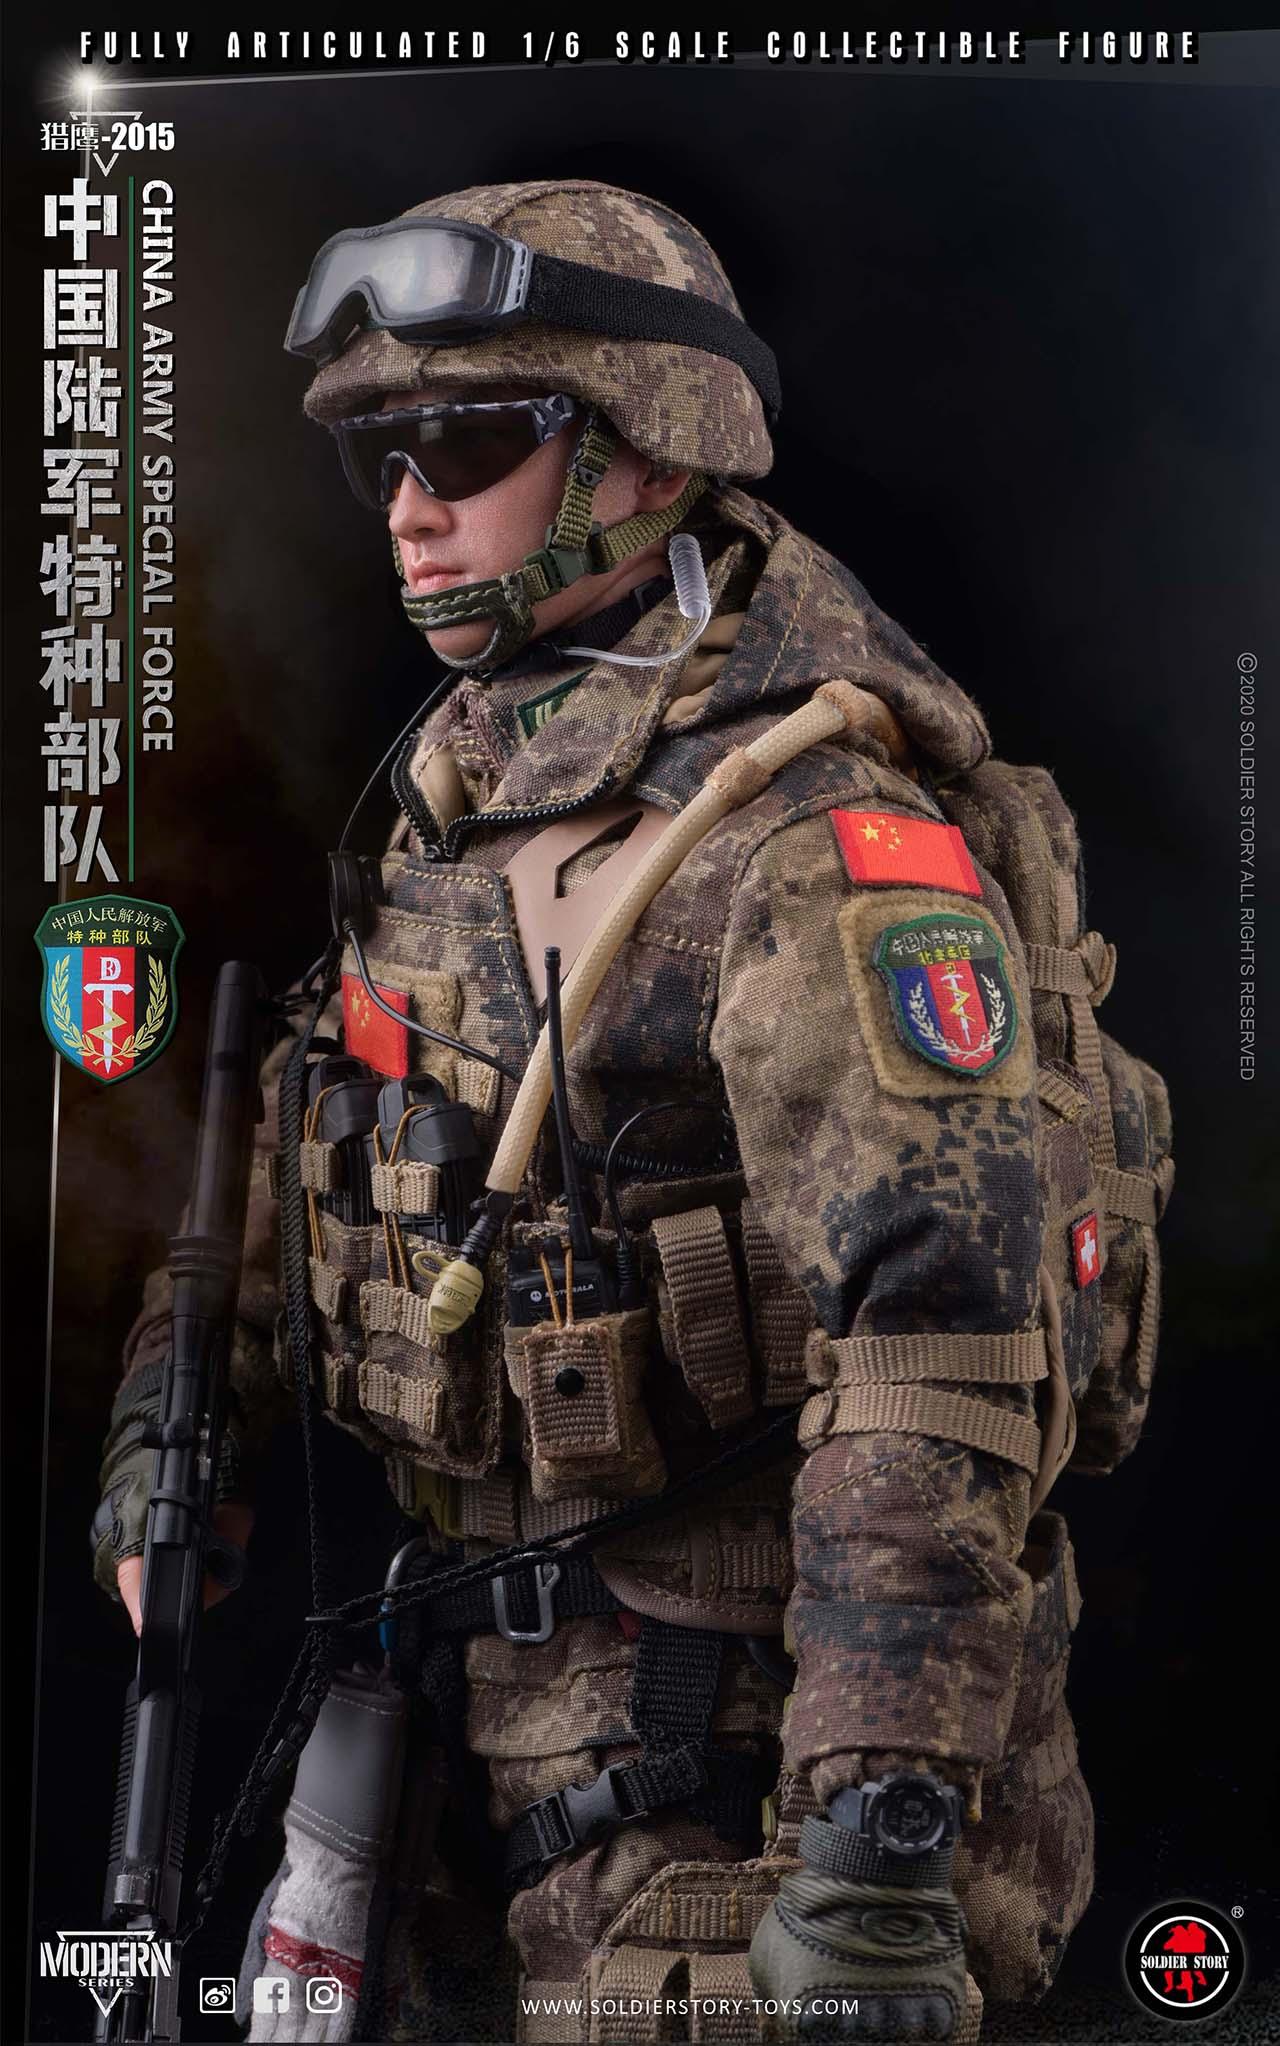 胸前的战术模组防弹衣外侧装备了单兵电台与弹匣收纳包另外对比新闻